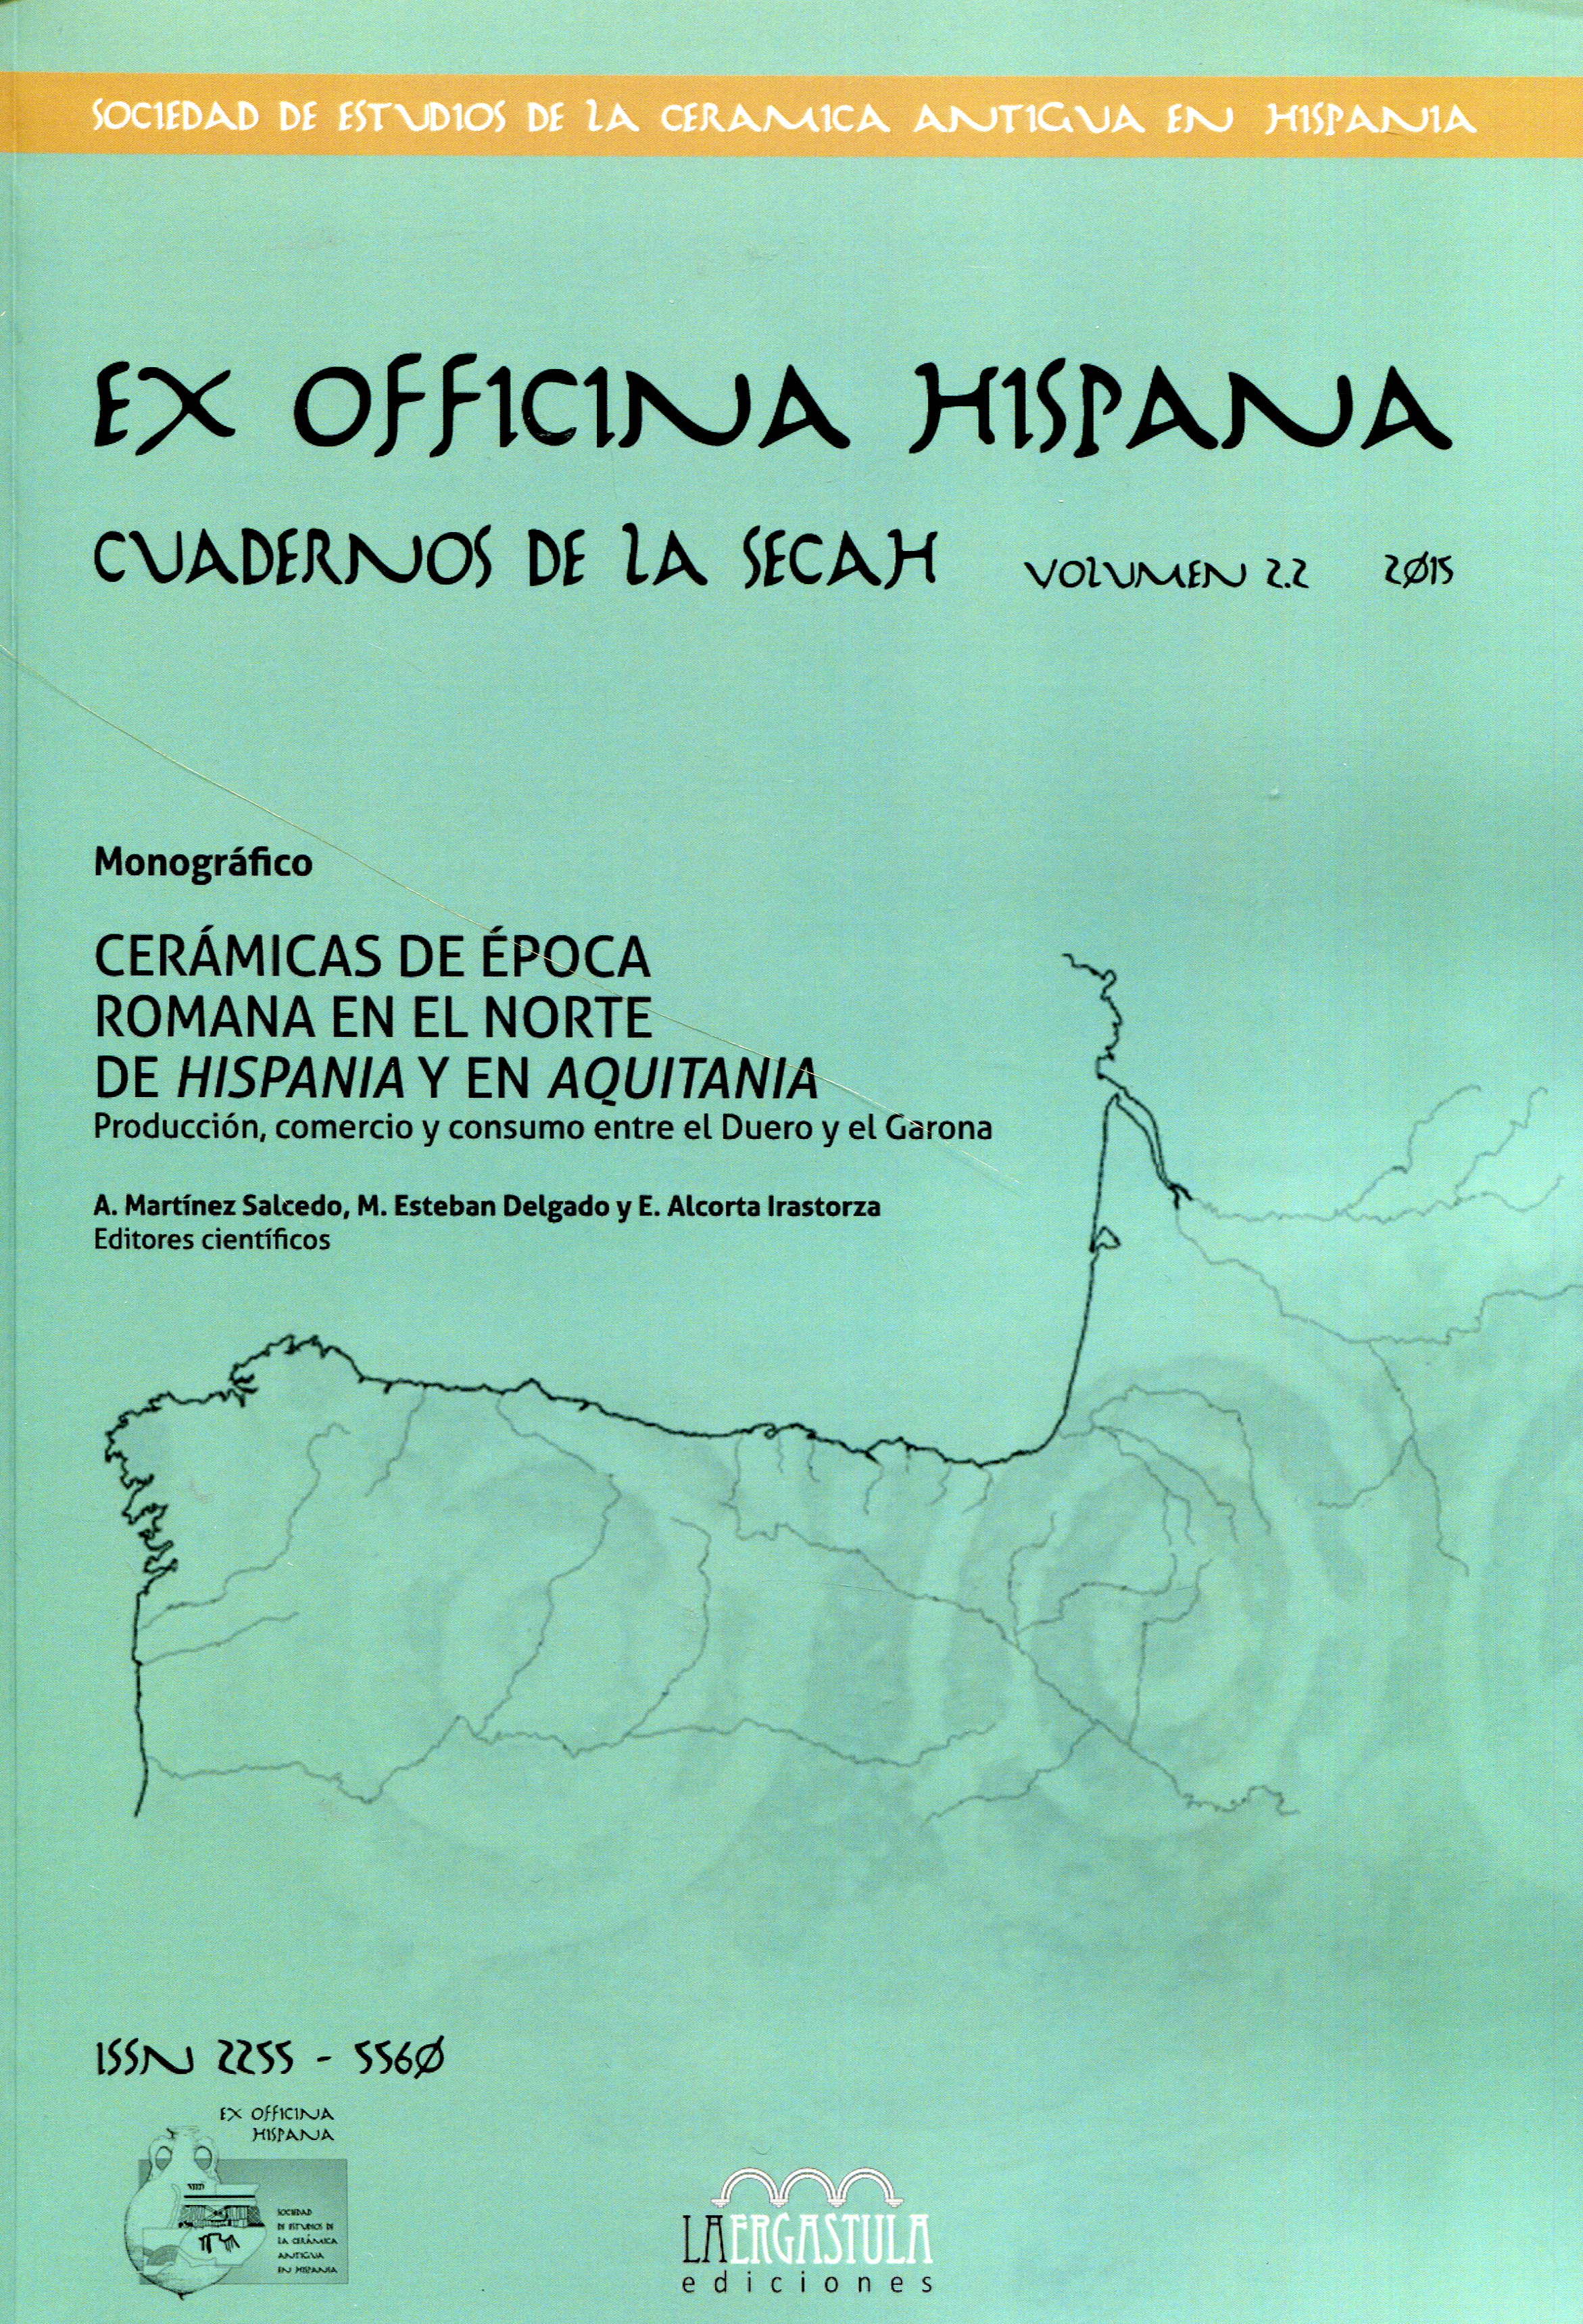 Cerámicas de época romana en el norte de Hispania y en Aquitania: producción, comercio y consumo entre el Duero y el Garona